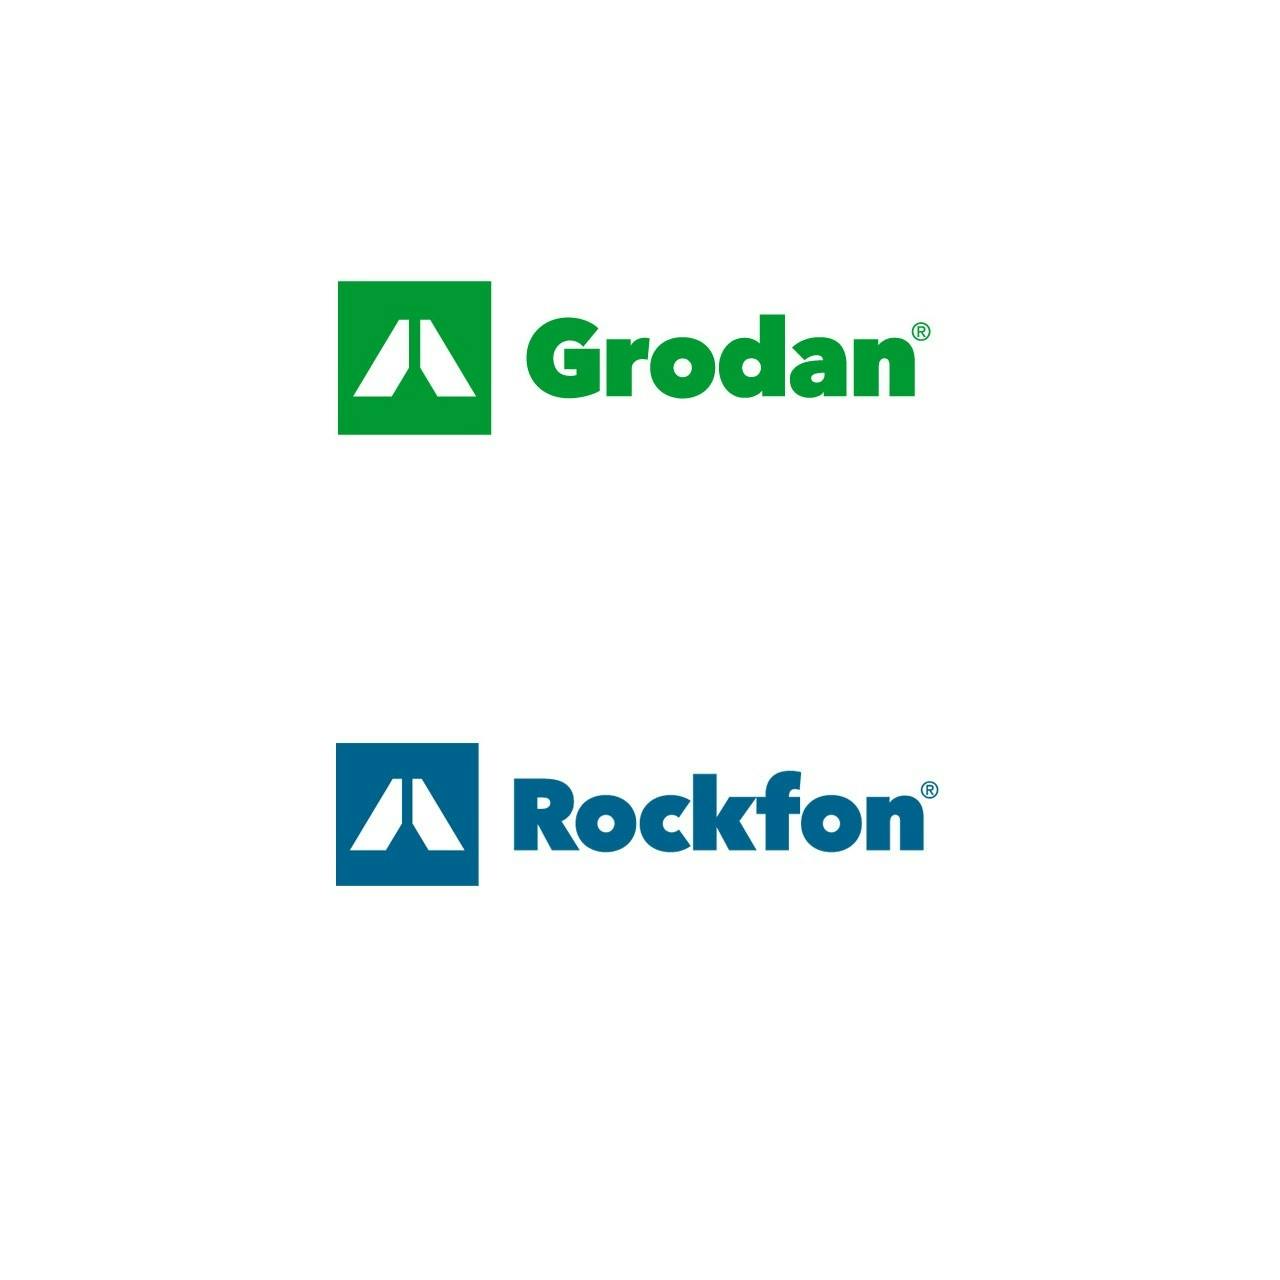 Grodan & Rockfon logo